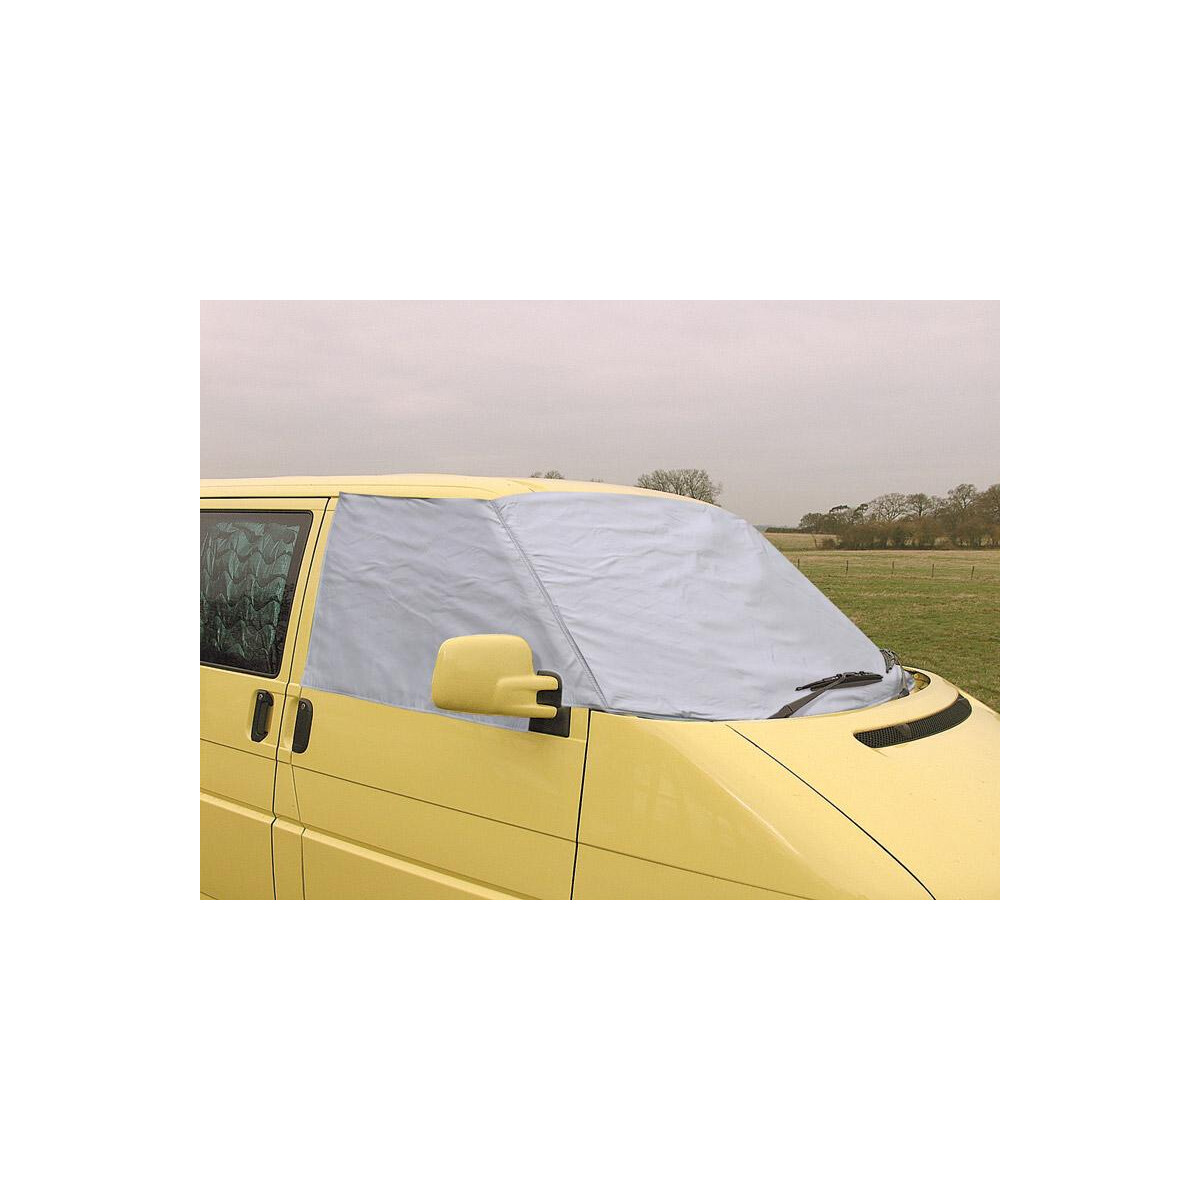 Thermoschutz außen Fahrerhausscheiben mit Seitenfenster Volkswagen